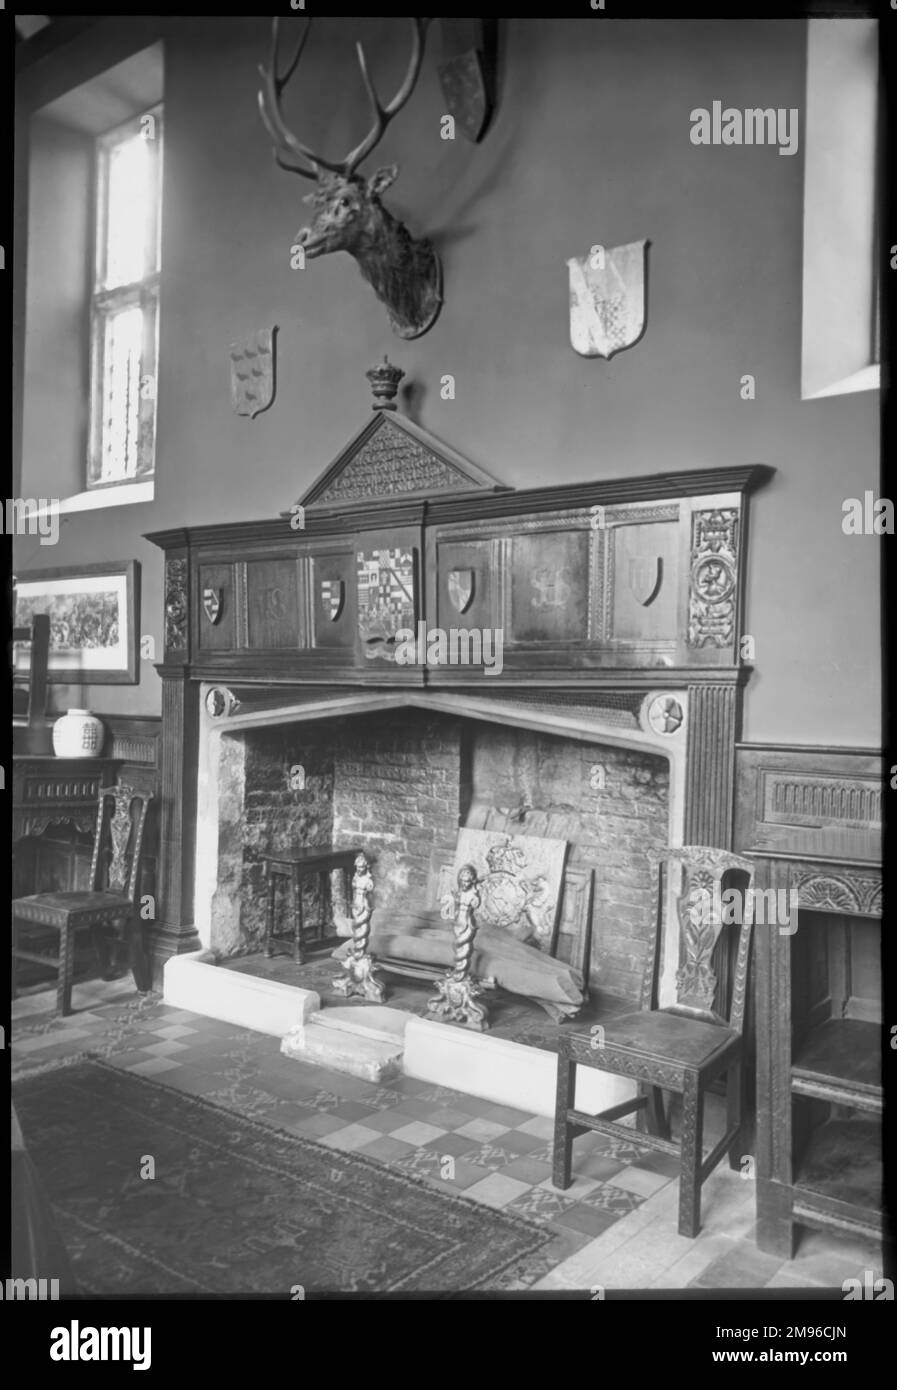 Vue intérieure de la salle du Sackville College, East Grinstead, West Sussex, une almshouse de Jacobean fondée en 1609 pour offrir un hébergement protégé aux personnes âgées. Vu ici est une grande cheminée en brique et grille, avec une chaise en bois de chaque côté, et une tête de cerf avec des bois au-dessus. Banque D'Images